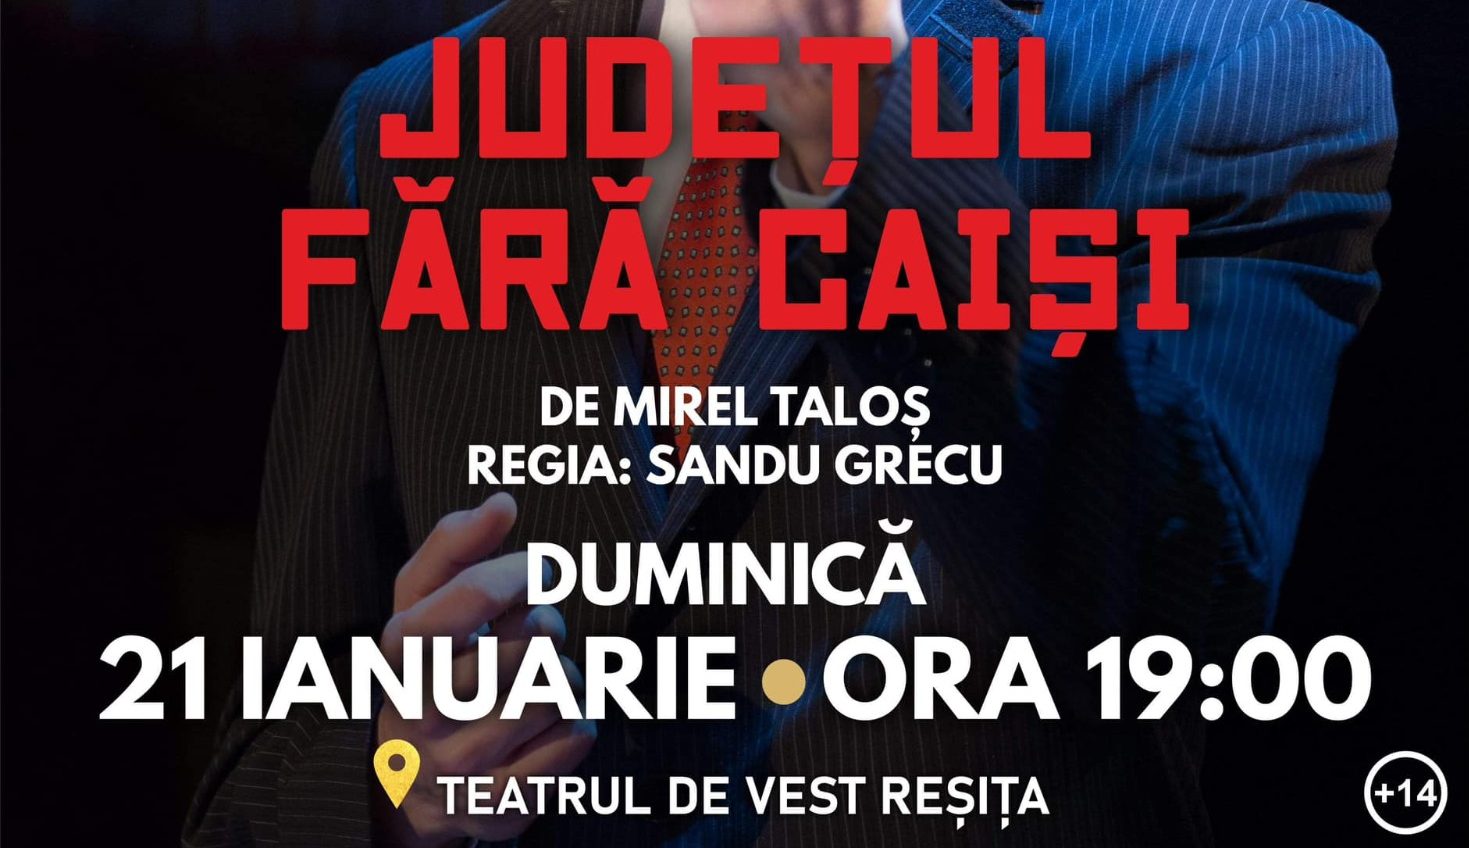 Teatrul de Vest vă așteaptă duminică, 21 Ianuarie de la 19:00 la spectacolul JUDEȚUL FĂRĂ CAIȘI, de Mirel Taloș